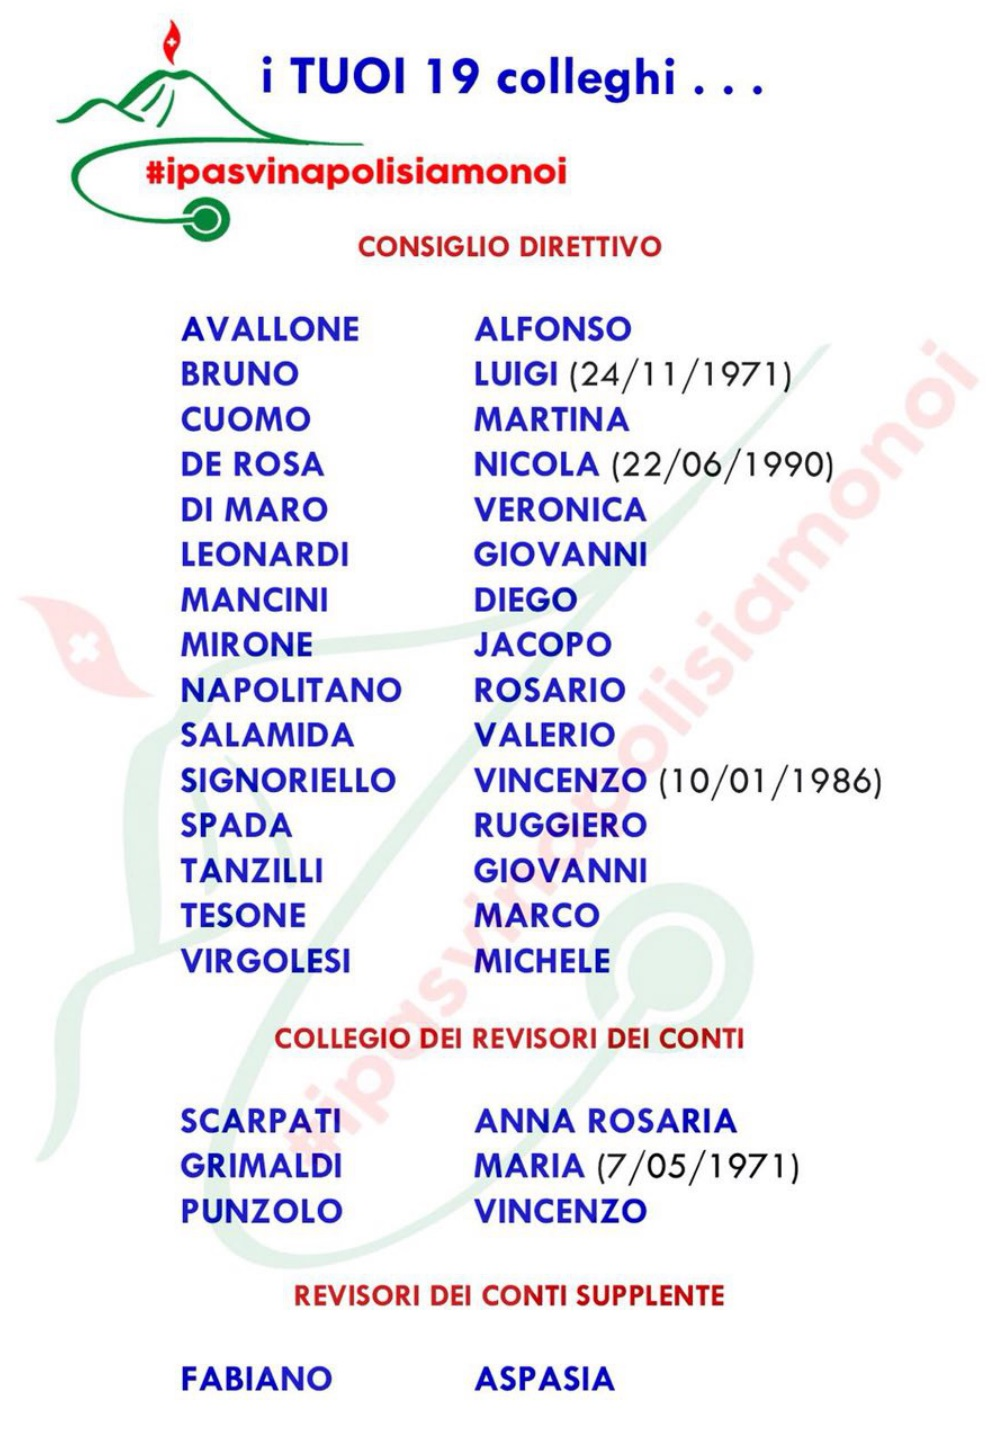 Il collegio ipasvi di Napoli si rinnova con la lista #IpasviNapoliSiamoNoi 2